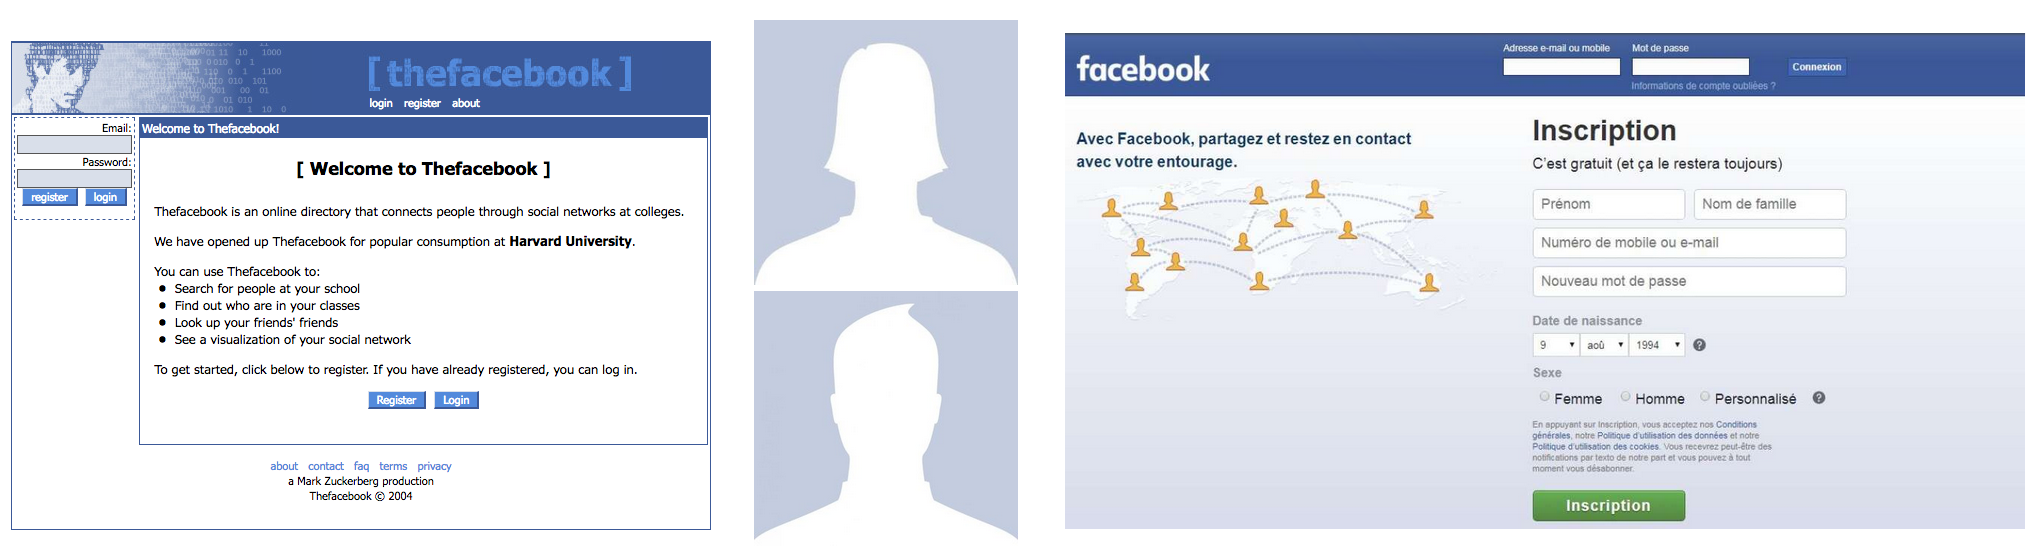 Les 20 ans de Facebook, évolution de la page d’accueil et les avatars historiques par défaut